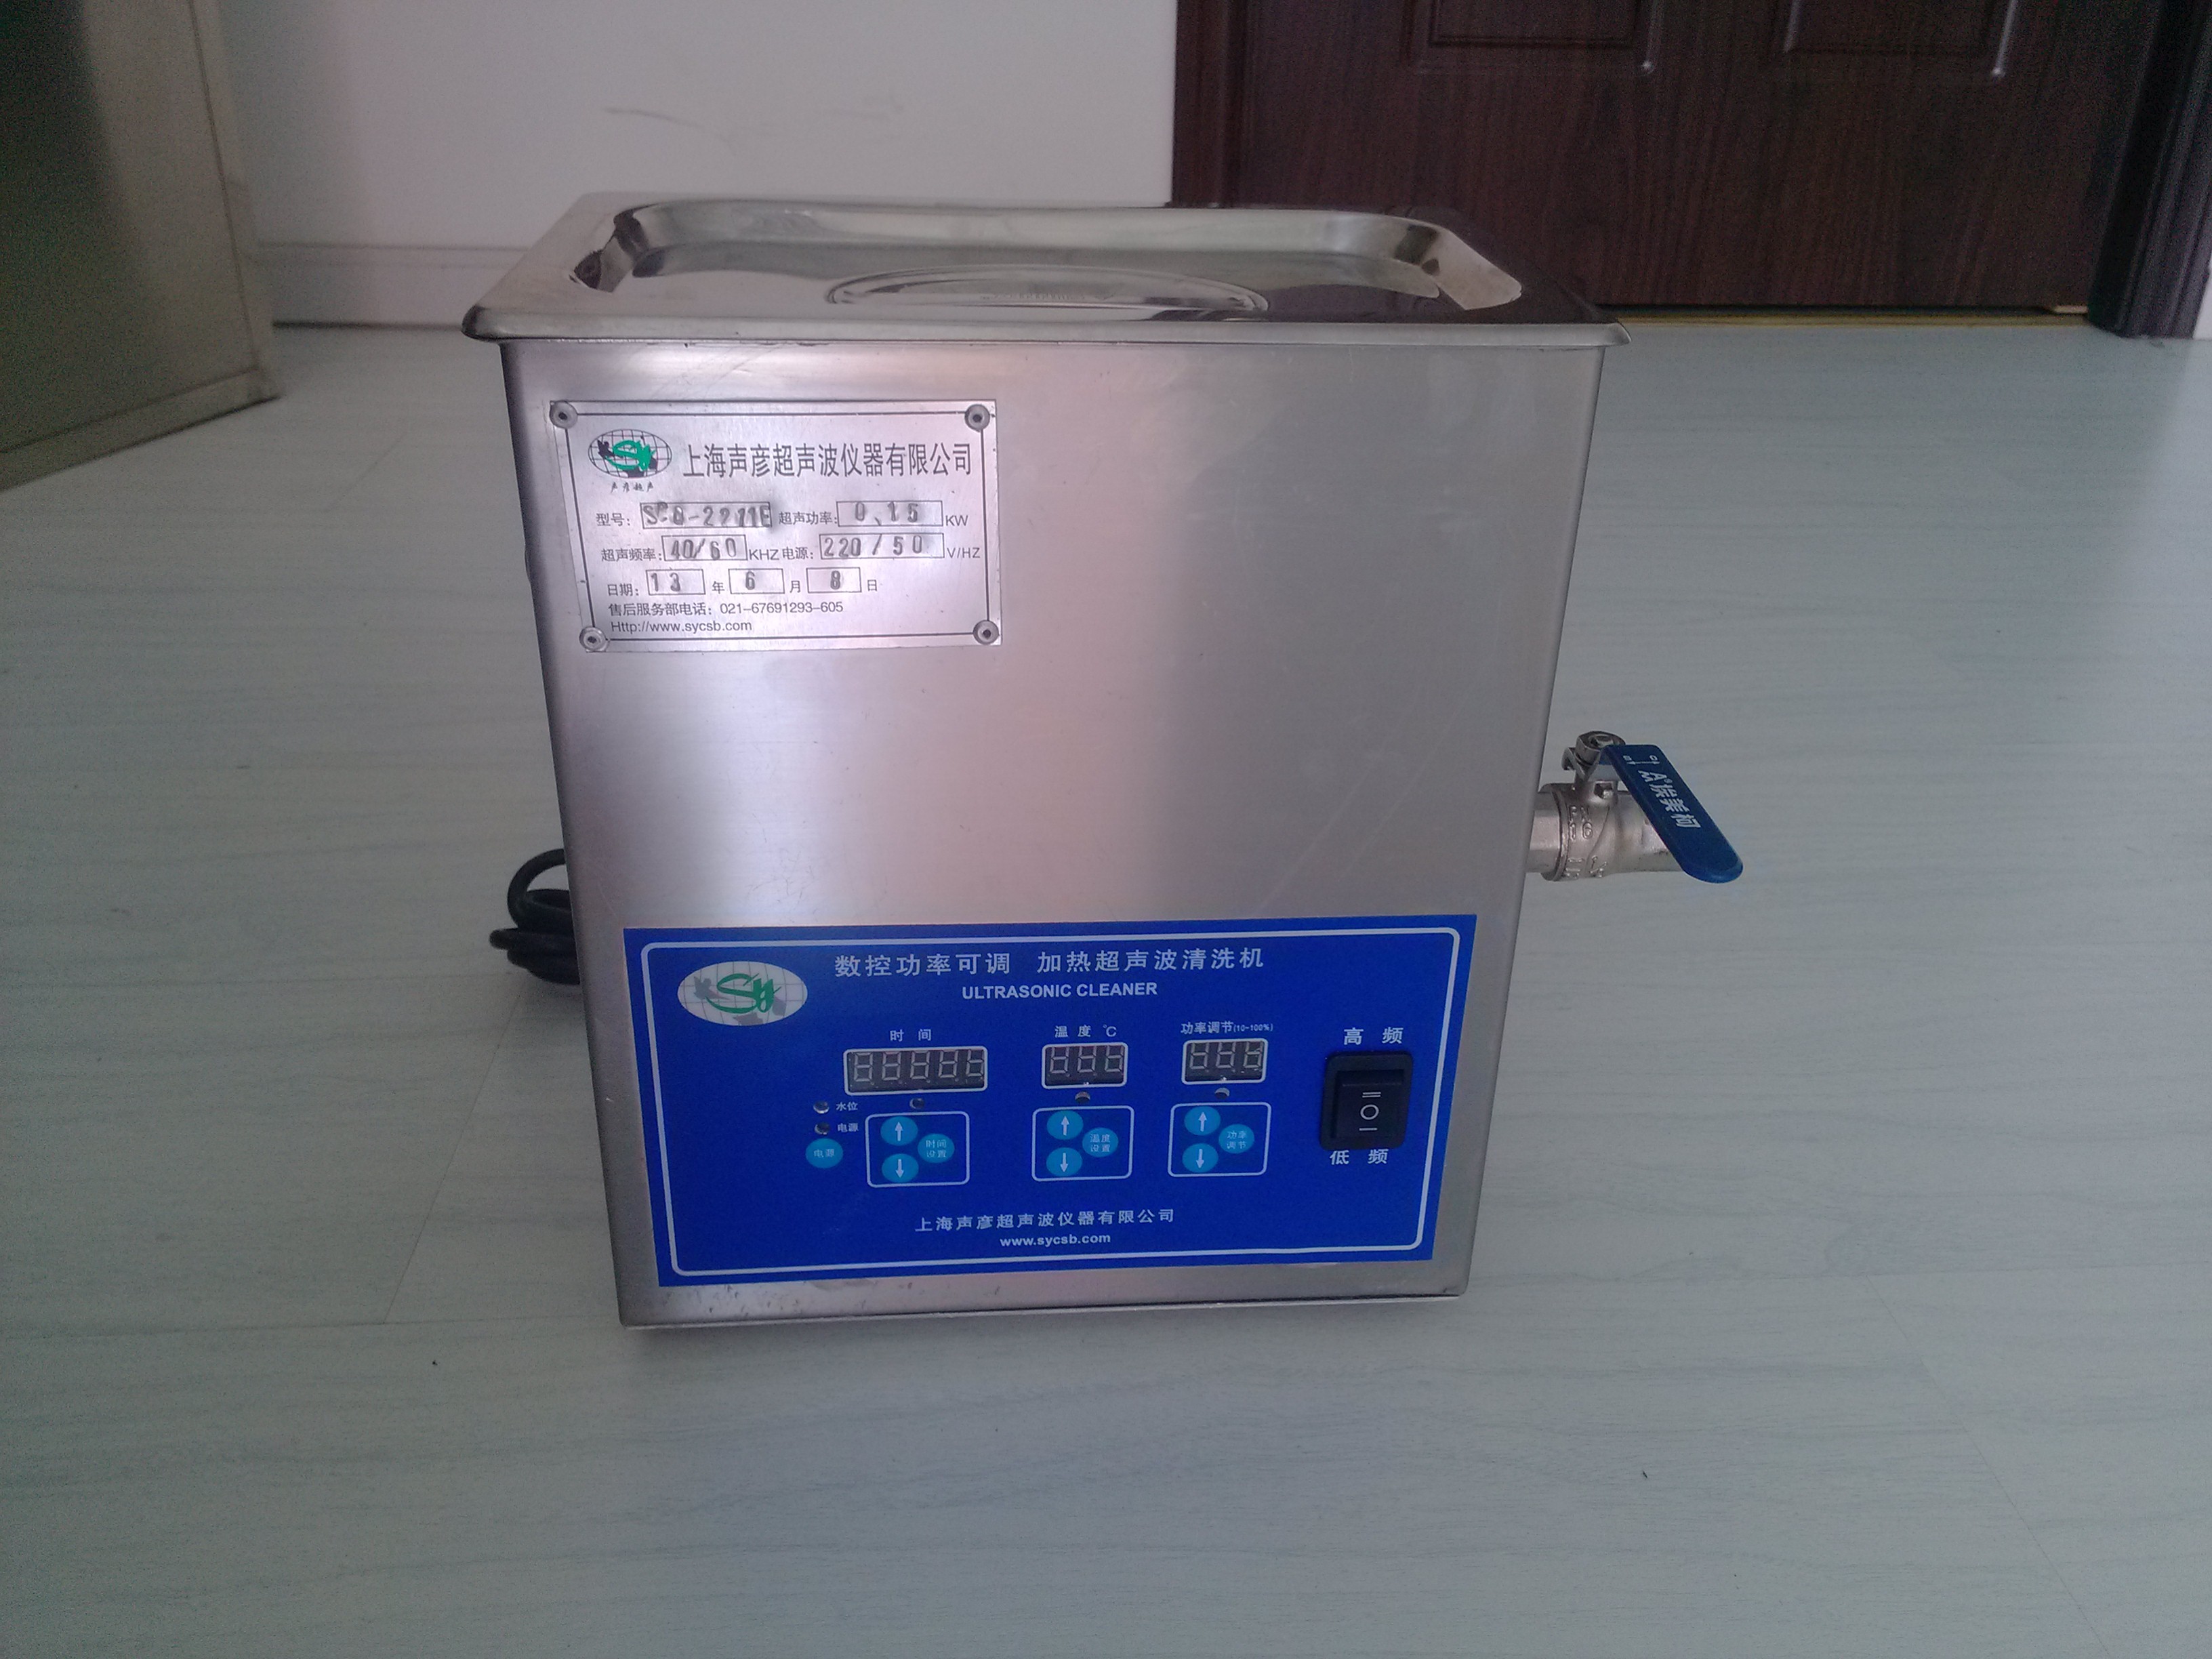 单槽多功能超声波清洗器/超声波清洗机SCQ-250B3